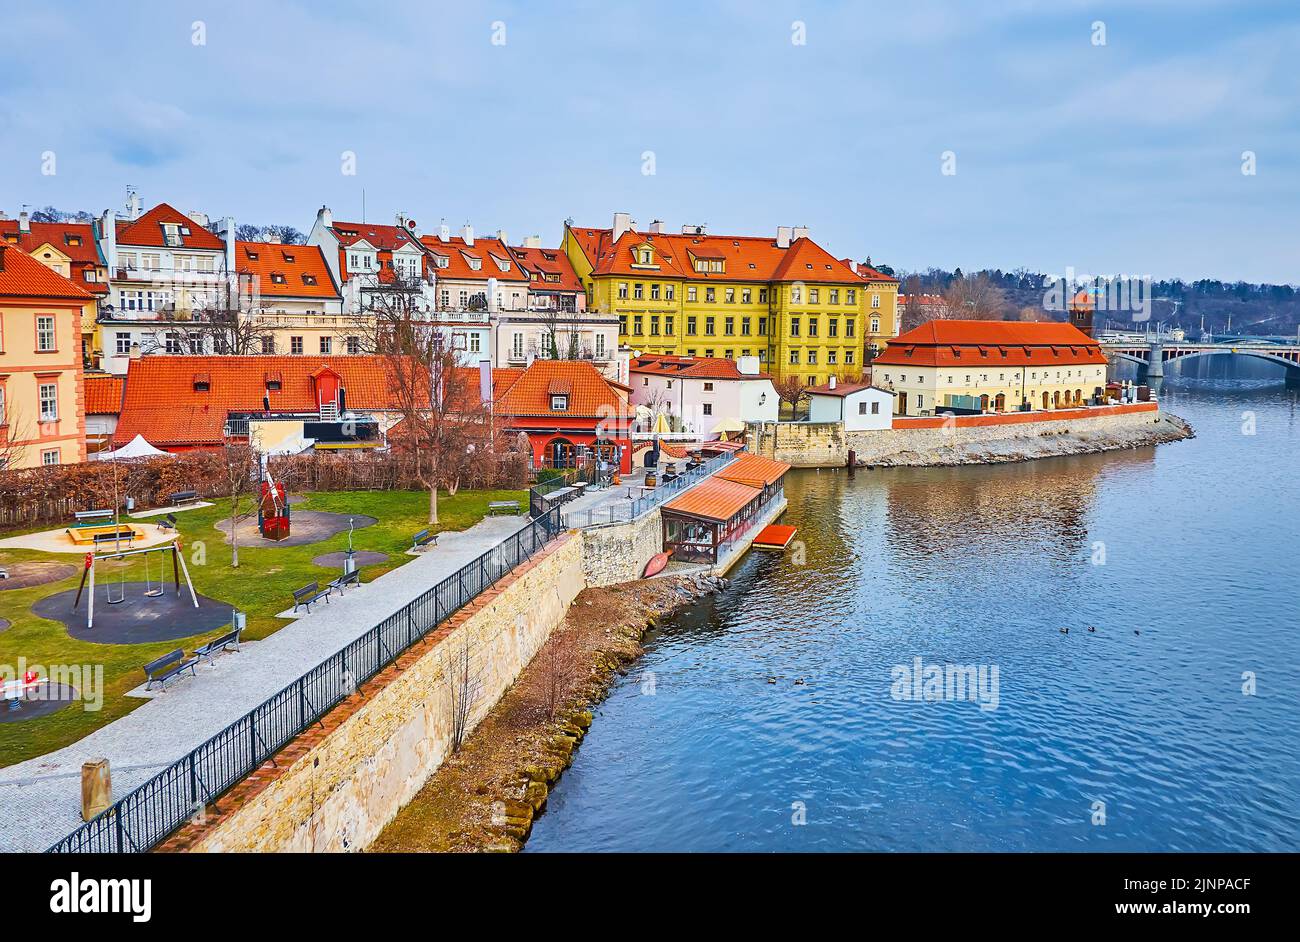 Der kleine Spielplatz, umgeben von historischen Häusern der Kleinseite am Ufer der Moldau, Prag, Tschechische Republik Stockfoto